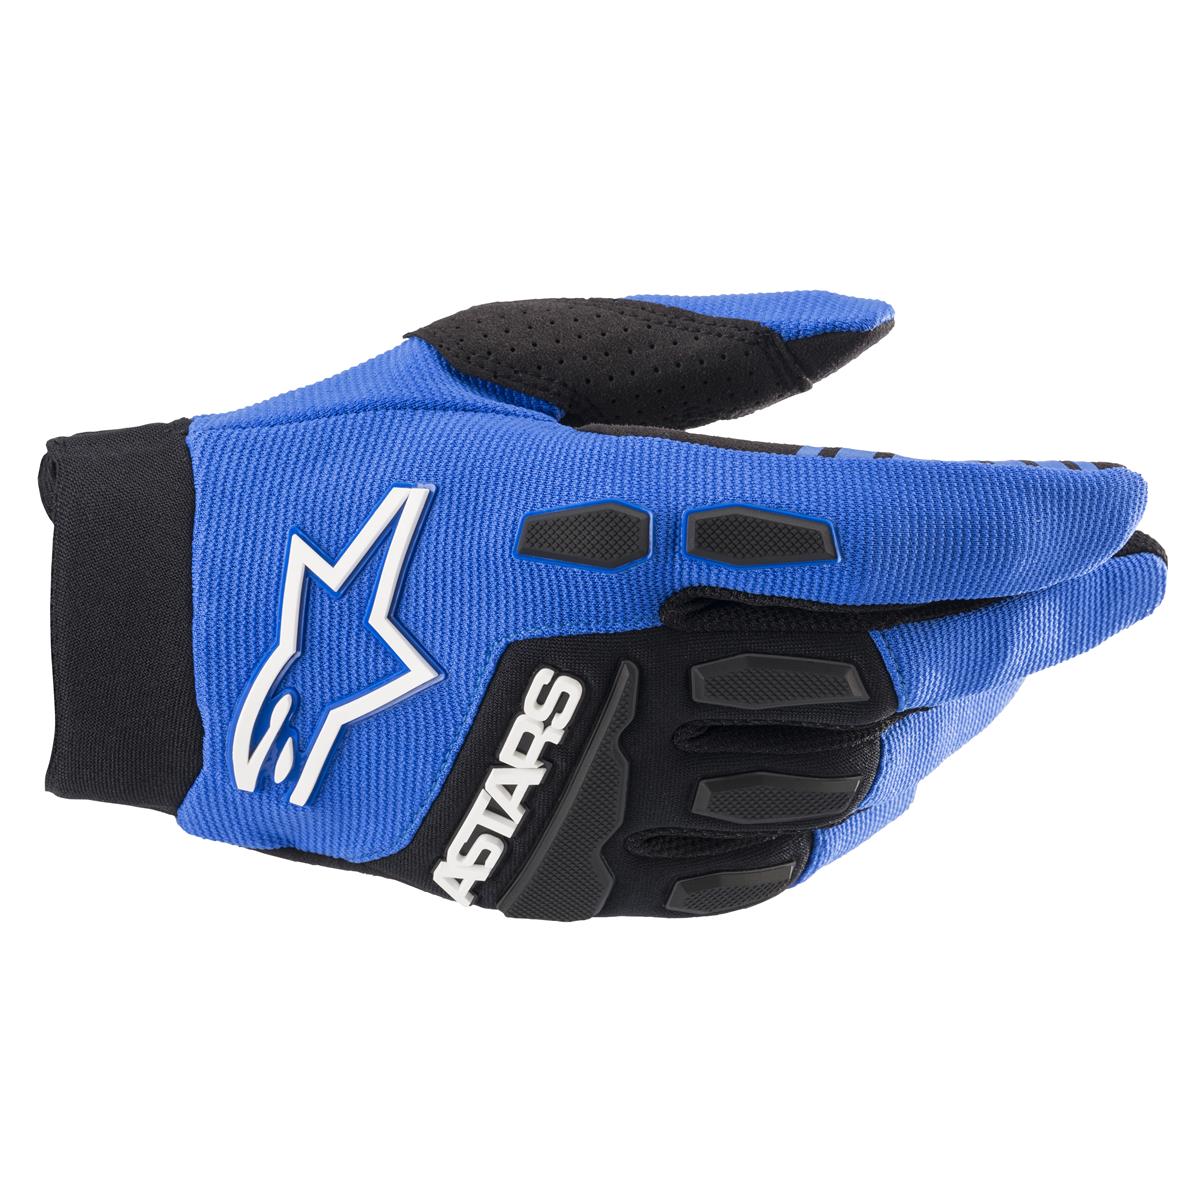 Alpinestars Handschuhe Full Bore Blau/Schwarz